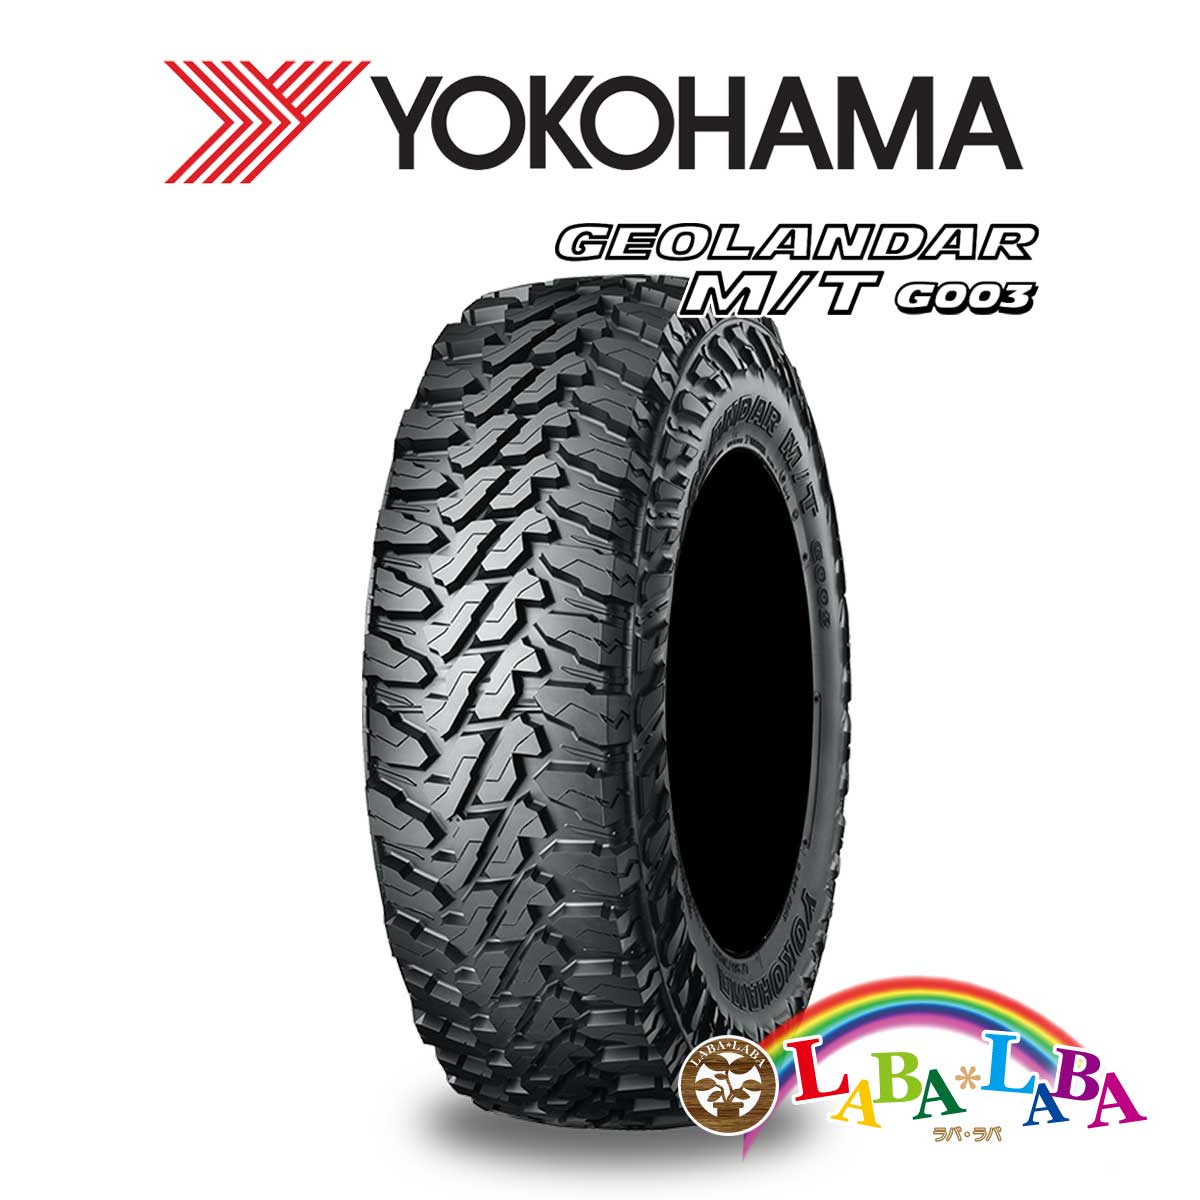 ２本以上送料無料 国産タイヤ オフロード 新品 最も タイヤのみ YOKOHAMA ヨコハマ GEOLANDAR ジオランダー M 58％以上節約 4WD T 75R17 マッドテレーン 108Q 255 SUV MT 111 G003